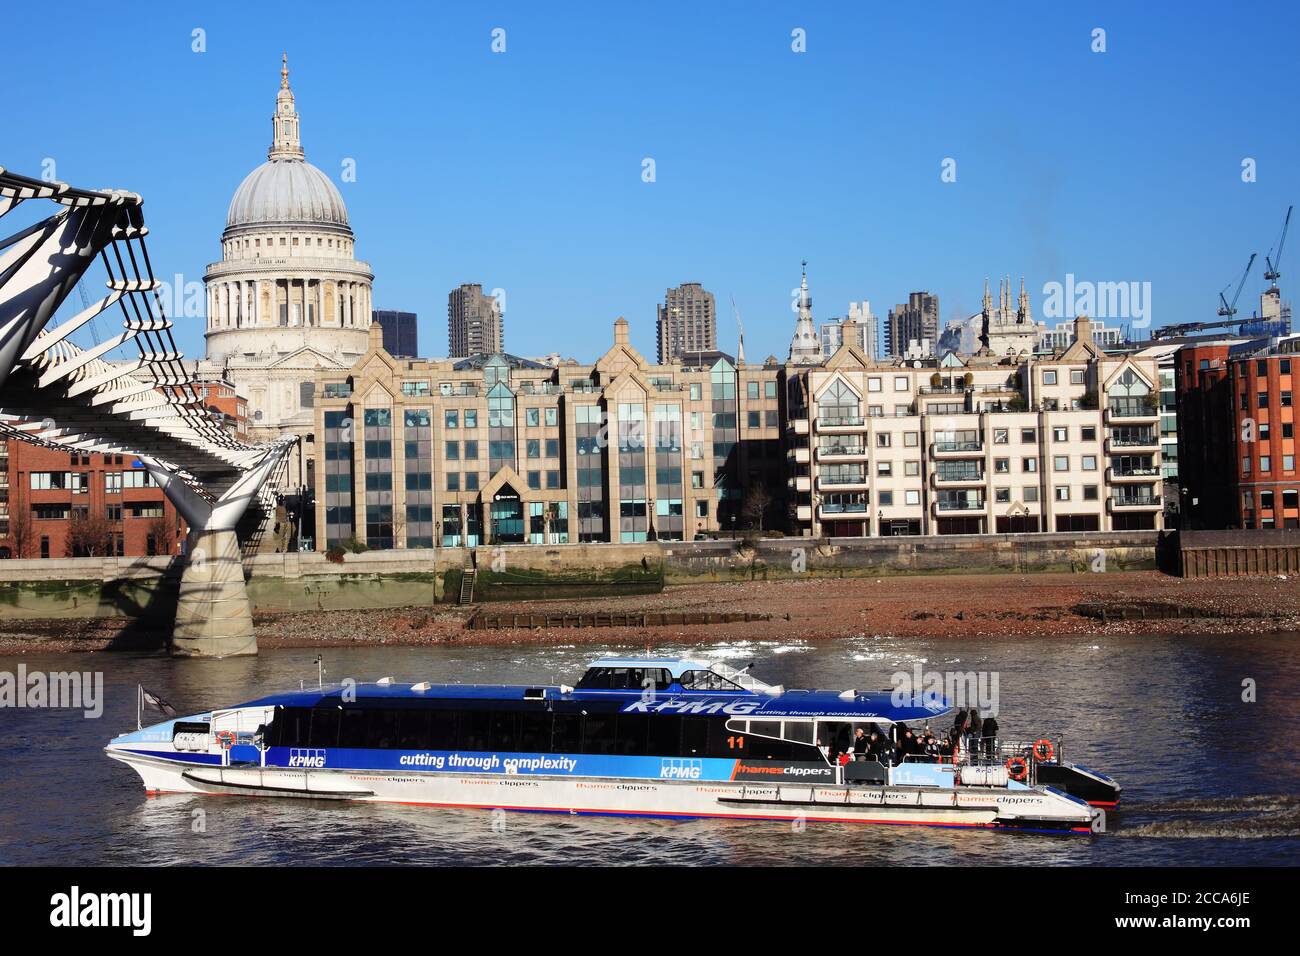 Londra, UK, 14 gennaio 2012 : Thames Clipper trasporto pubblico gita in battello sul Fiume Tamigi dalla Cattedrale di St Paul che è un viaggio popolare Foto Stock